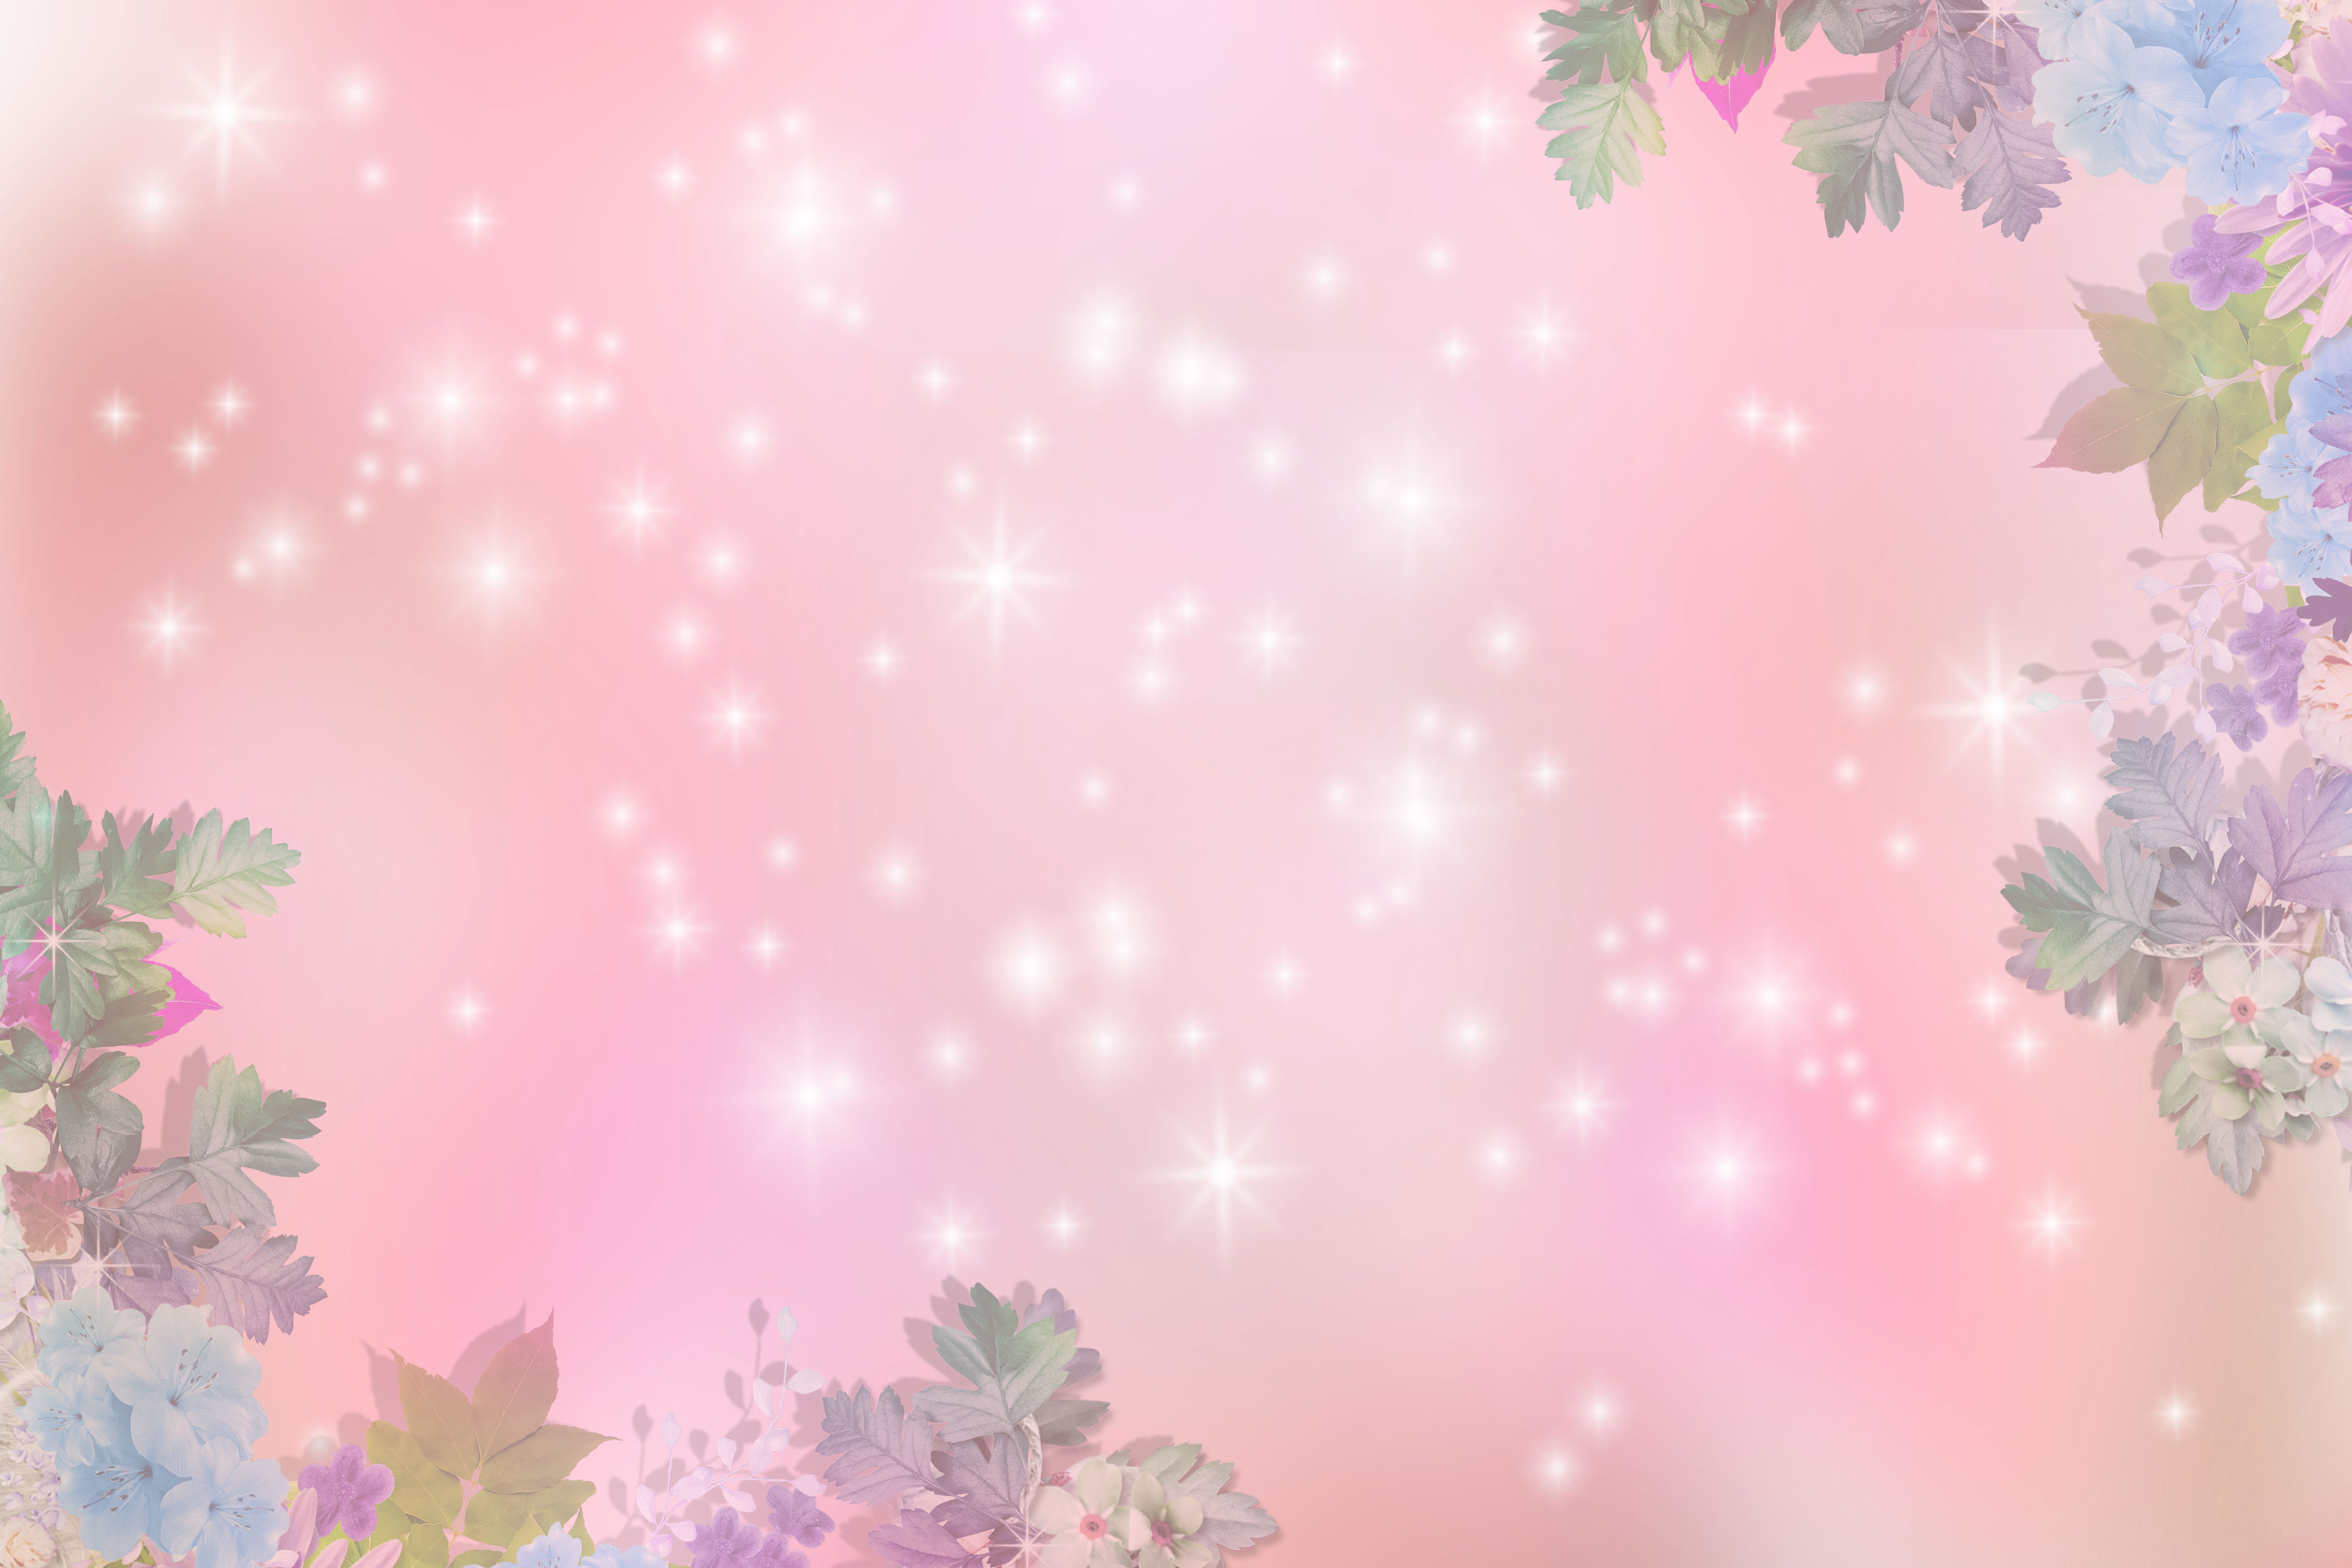 花のイラスト フリー素材 壁紙 背景no 068 ピンク 輝く光 淡い